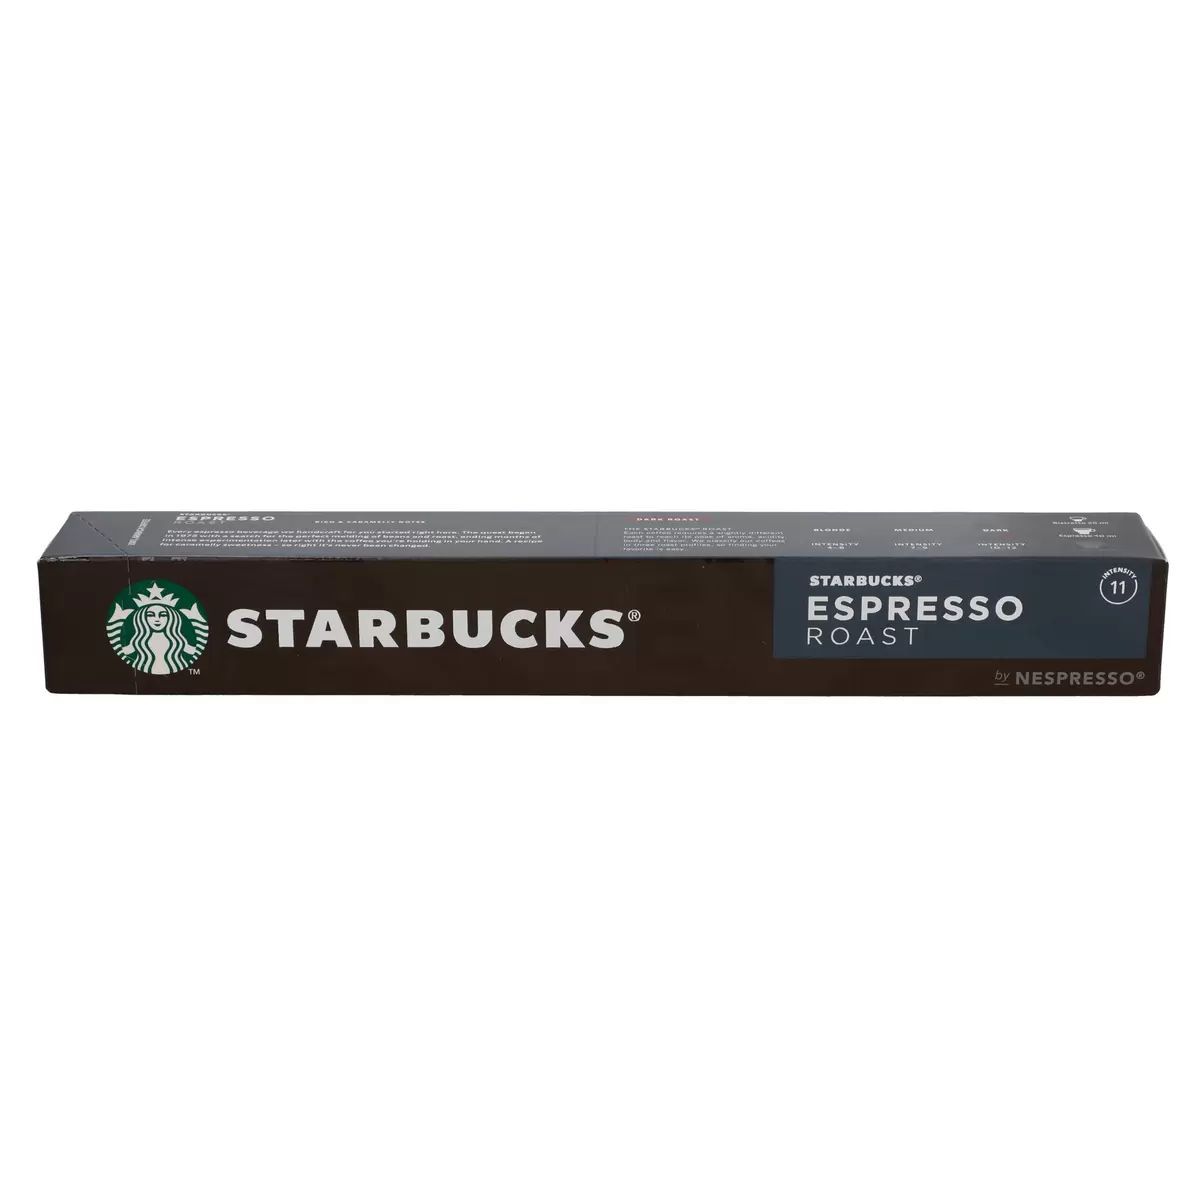 スターバックス ネスプレッソ互換カプセル エスプレッソロースト 10カプセル入 Starbucks Espresso Roast 10 Capsules for Nespresso